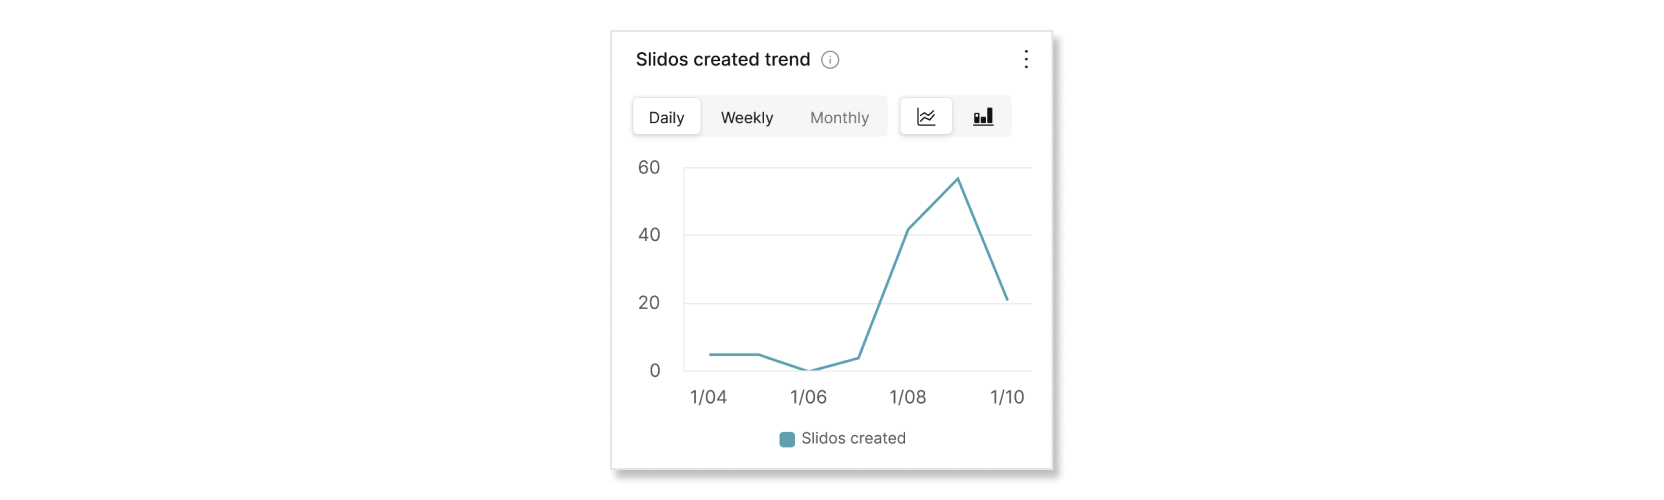 Slidos gráficos de tendencias creados en el análisis de Slido Control Hub